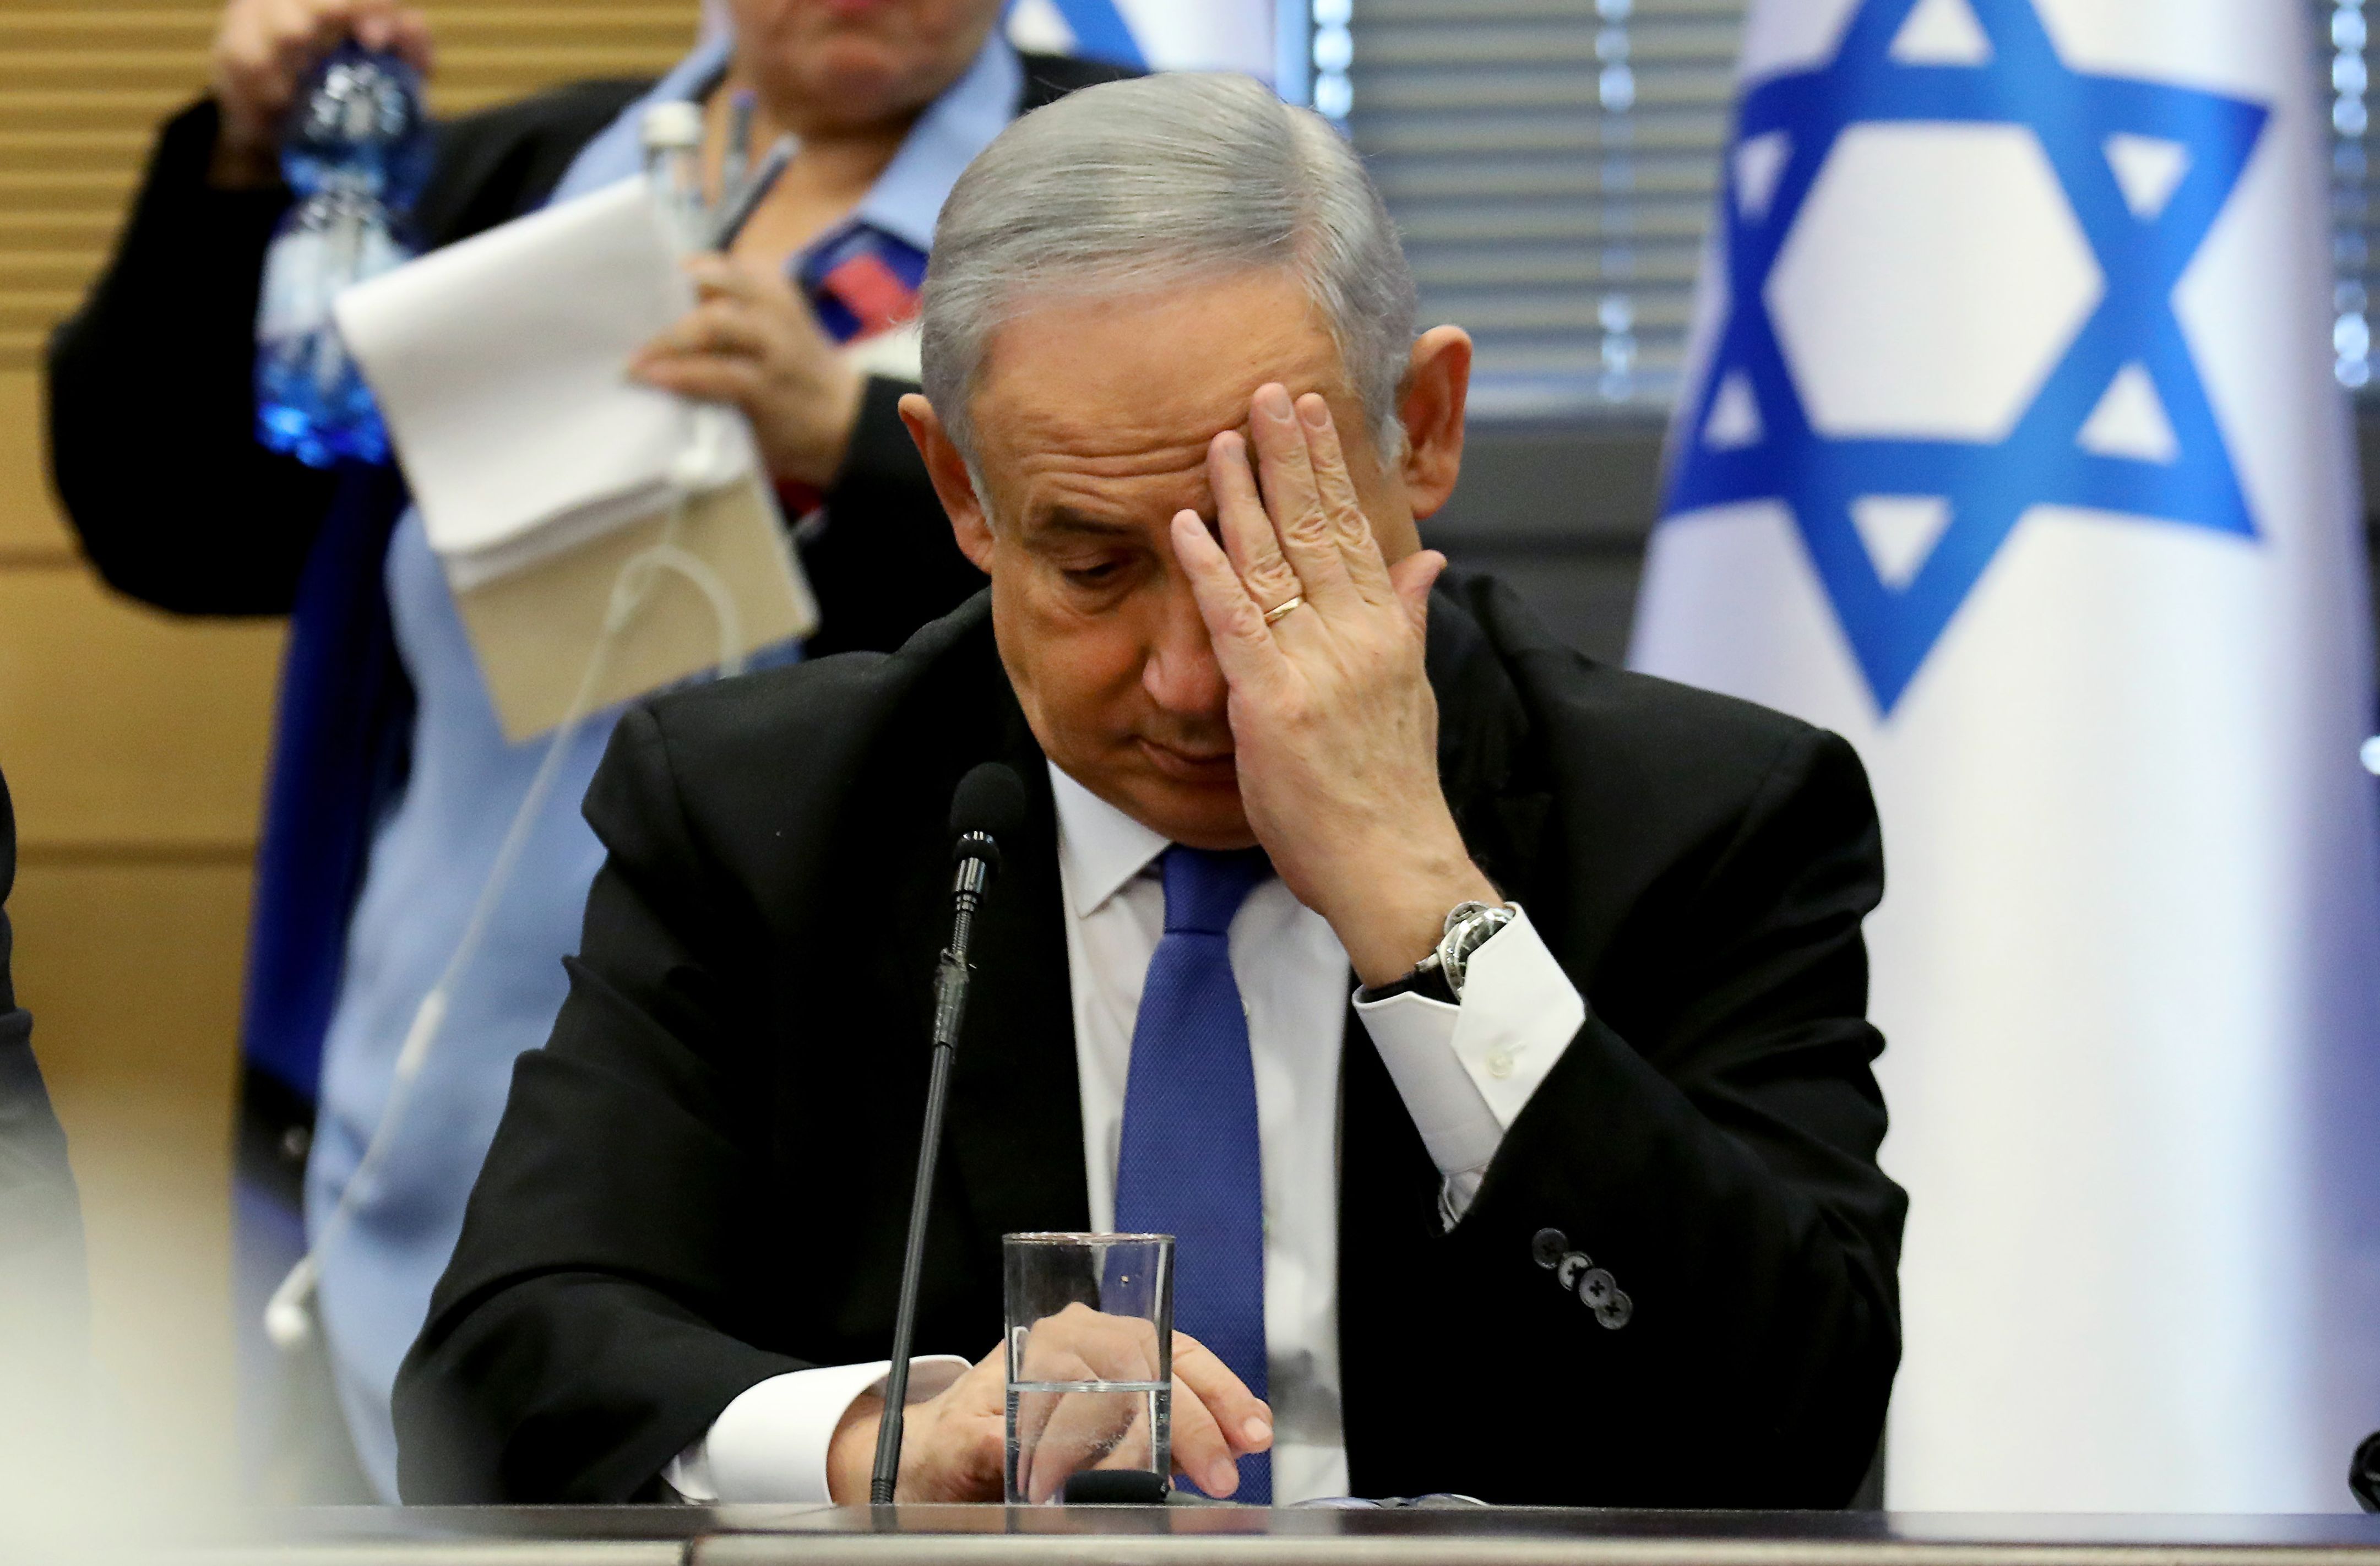 El primer ministro israelí, Benjamin Netanyahu, será procesado por corrupción. (Foto Prensa Libre: AFP)